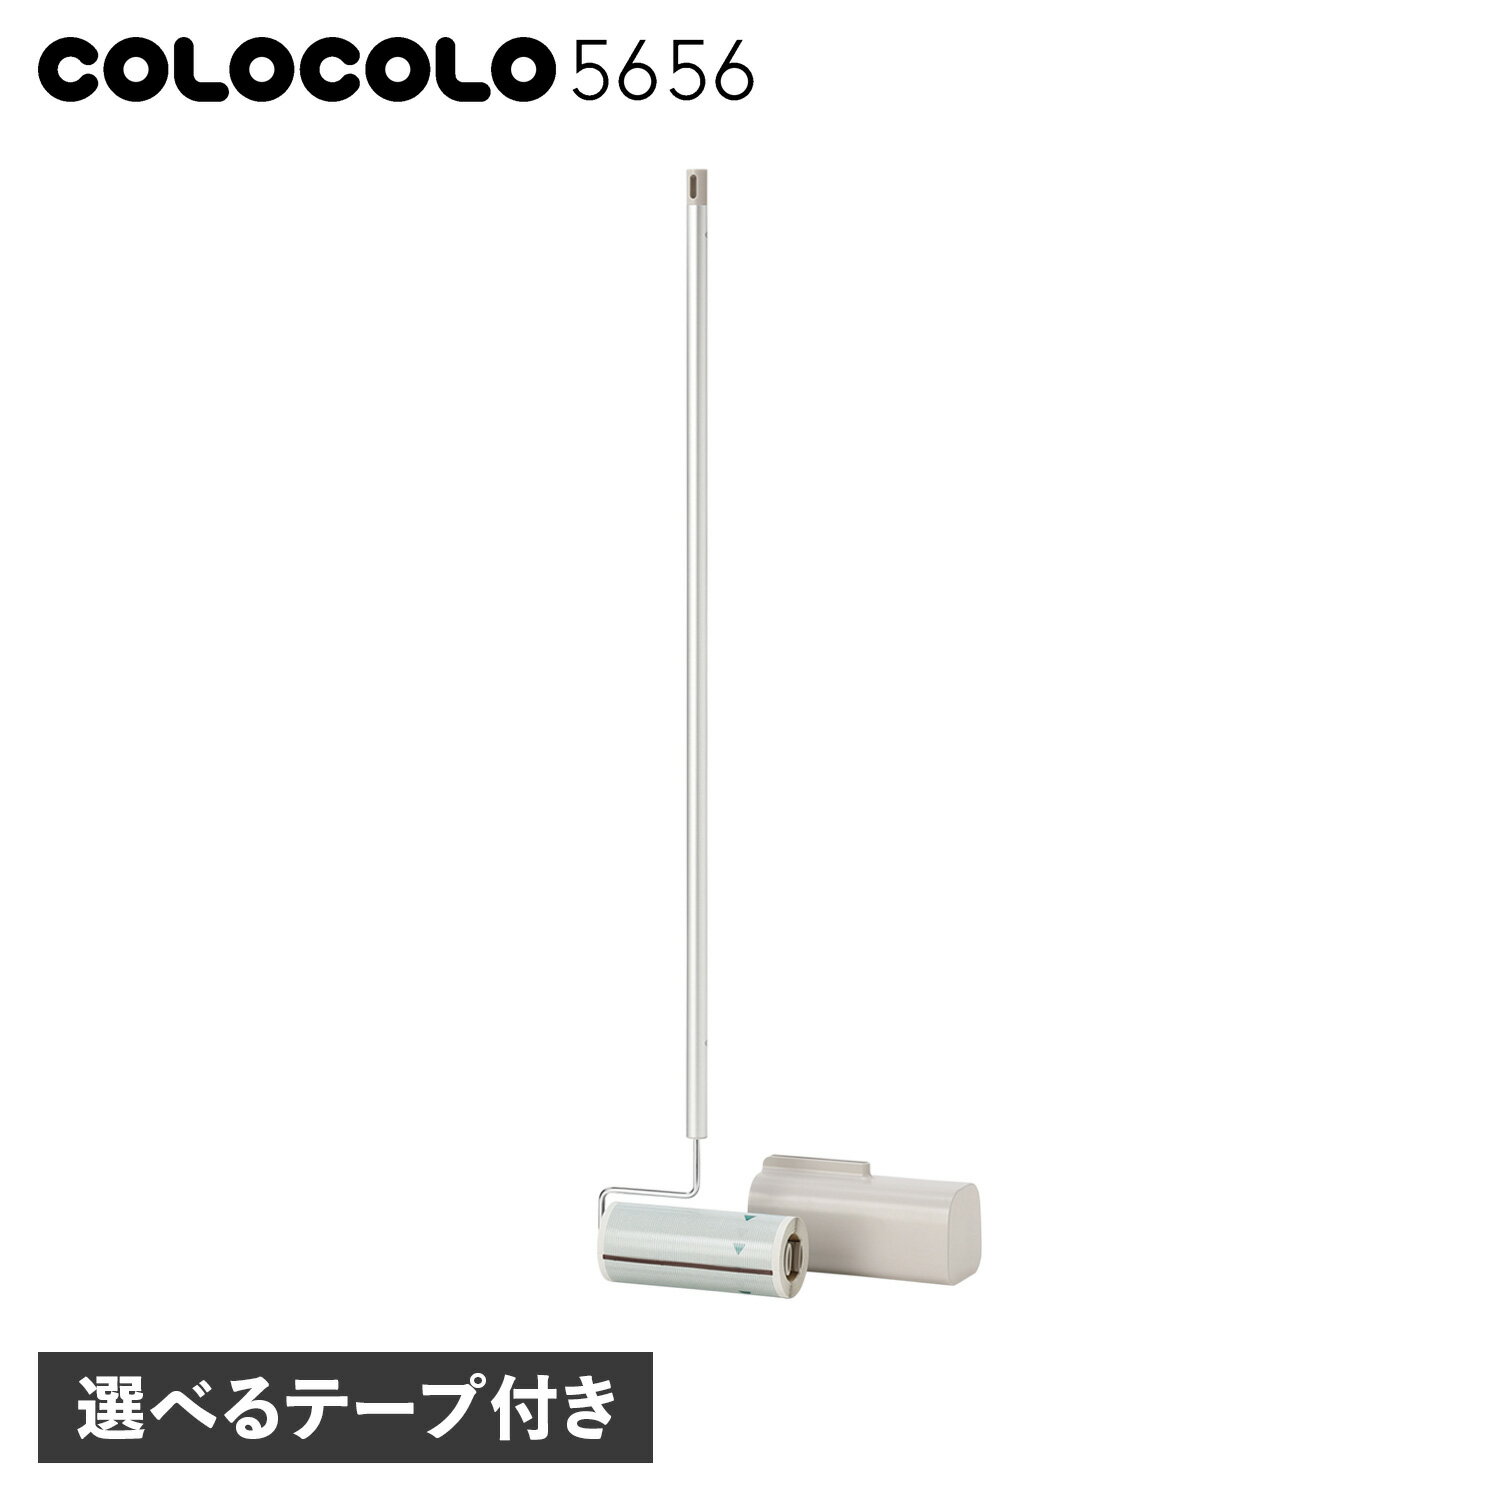 コロコロ COLOCOLO5656 粘着クリーナー スタンド式 強粘着 ニトムズ LONG HANDLE